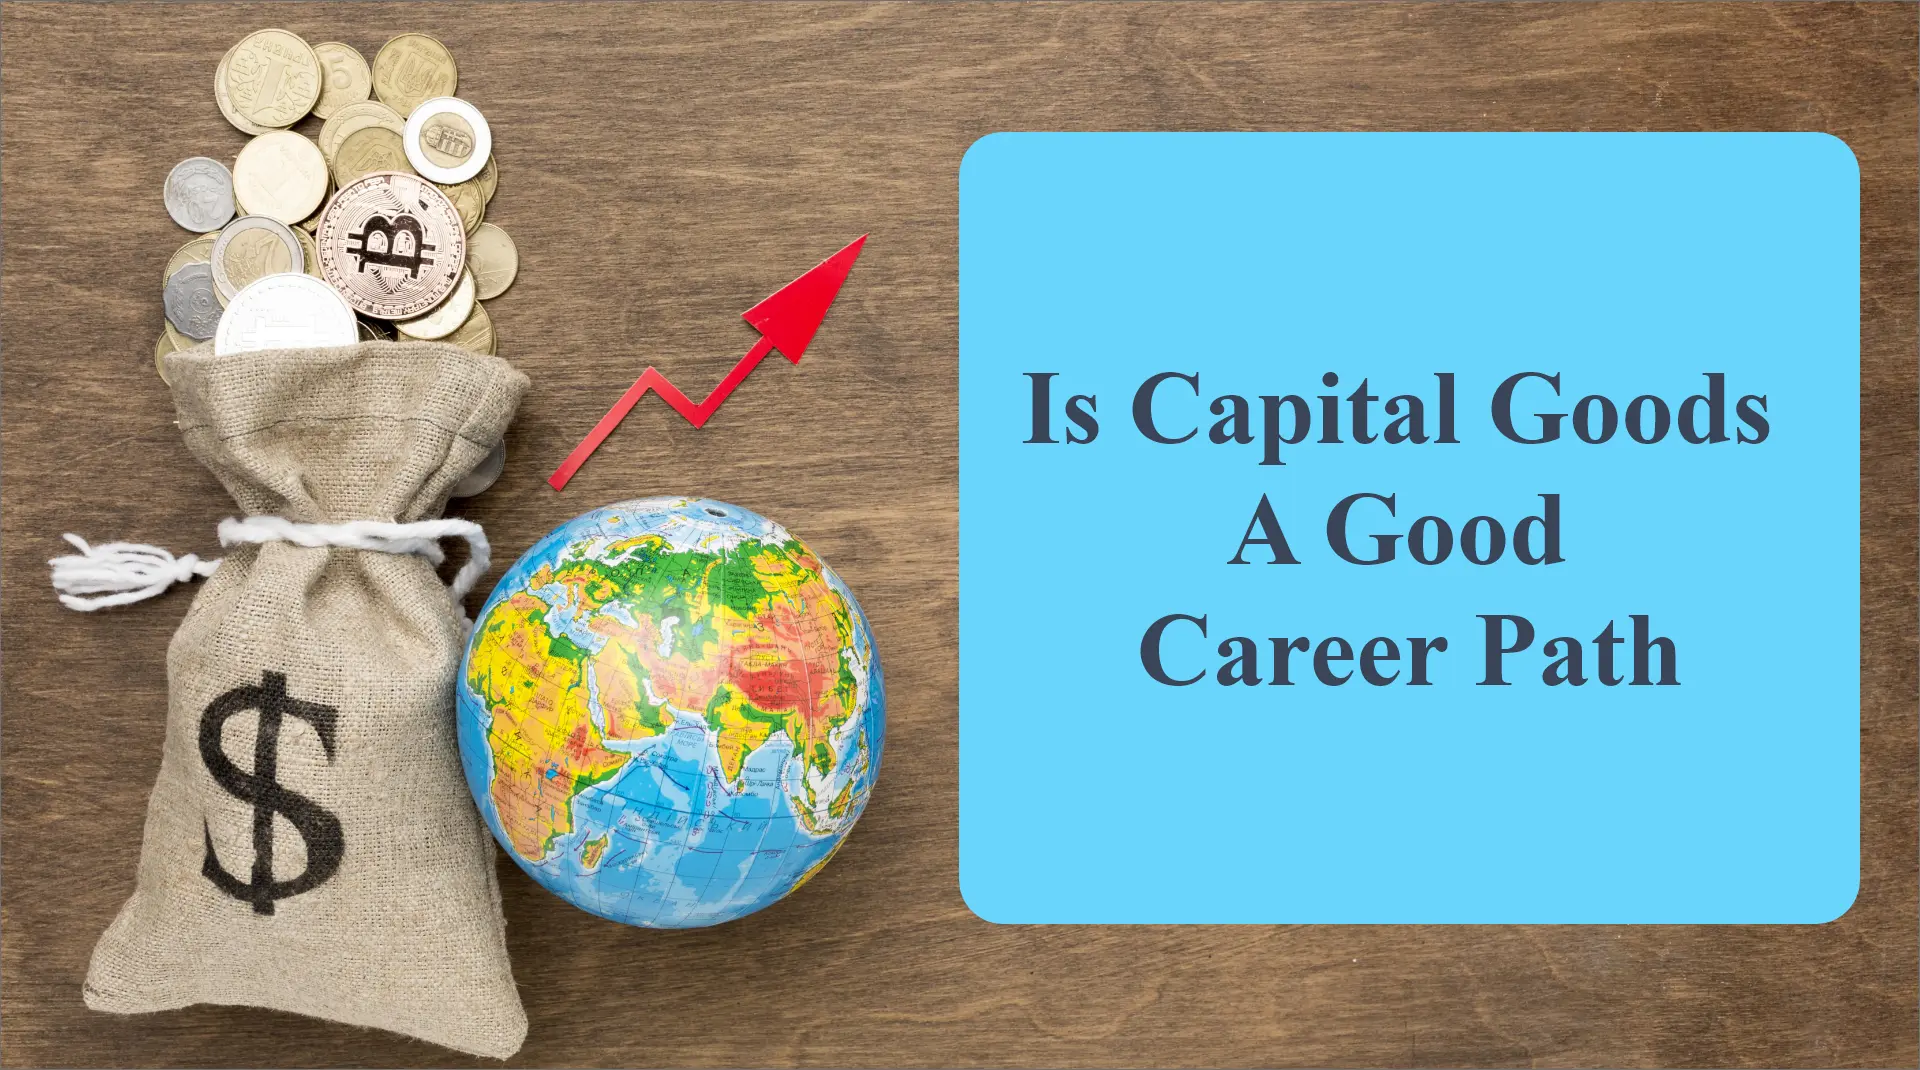 Is Capital Goods a Good Career Path?